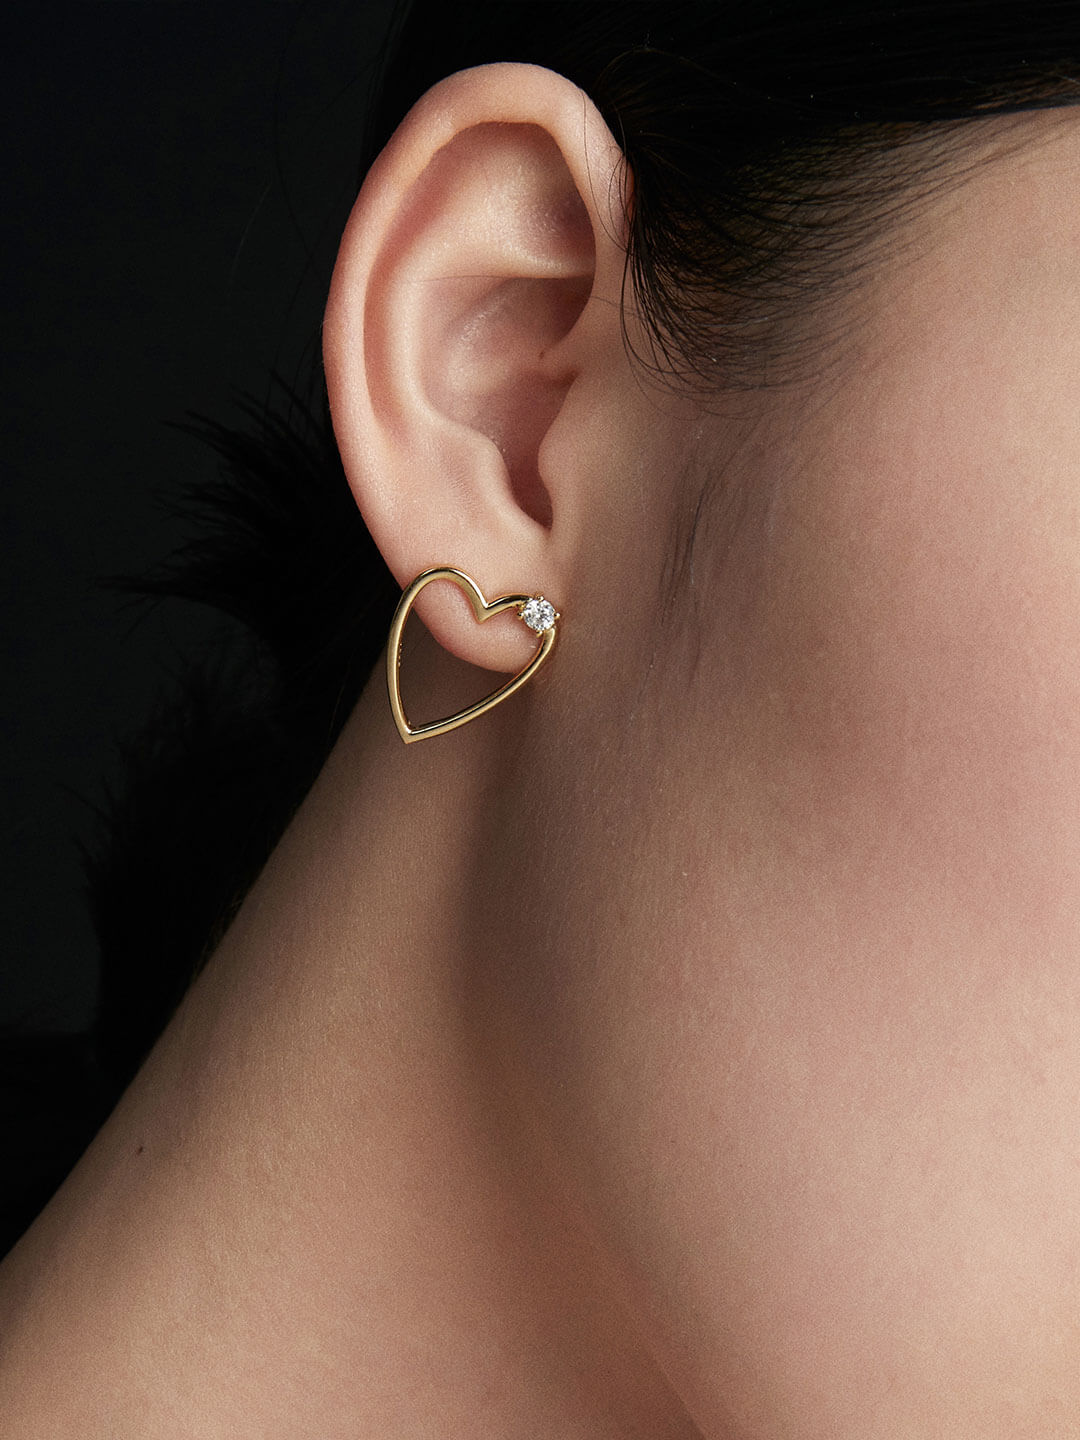 Tiny Stud Earrings Gold Stud Earrings Hollow Stud Earrings 